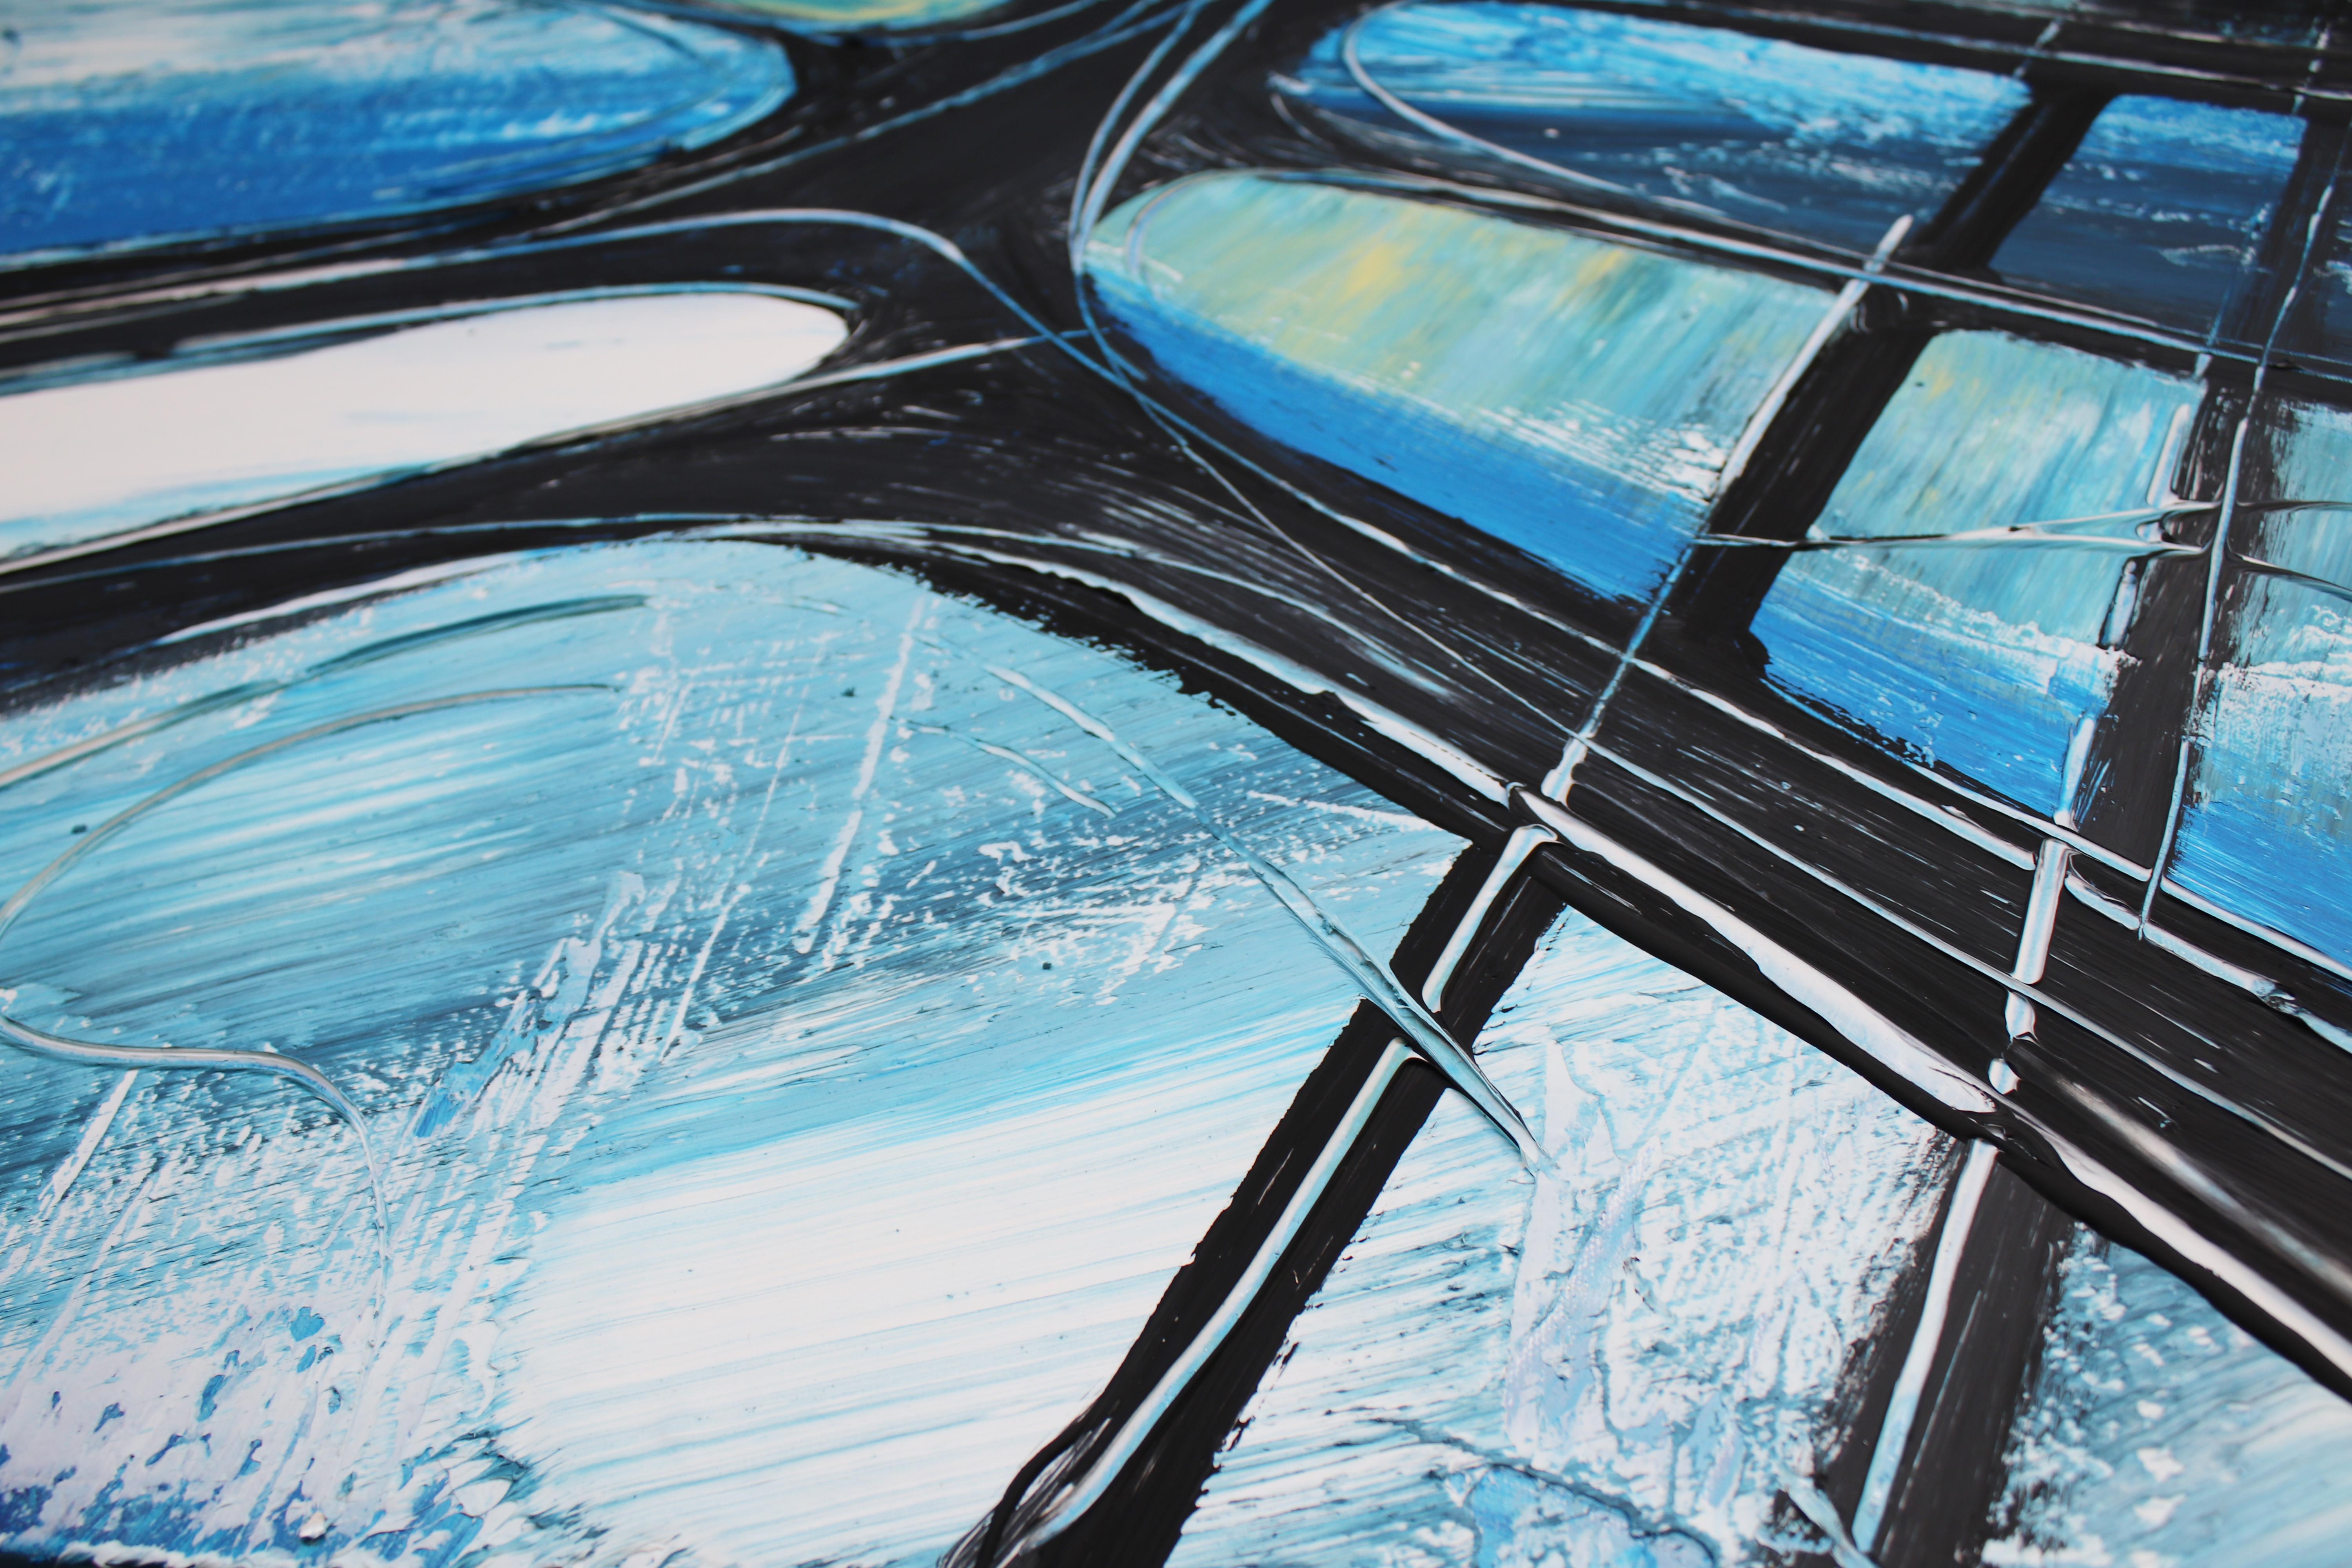 Peinture technique mixte sur toile abstraite bleue abstraite à forte texture, bleu brut urbain 76,2 x 122,2 cm - Bleu Abstract Painting par Irena Orlov